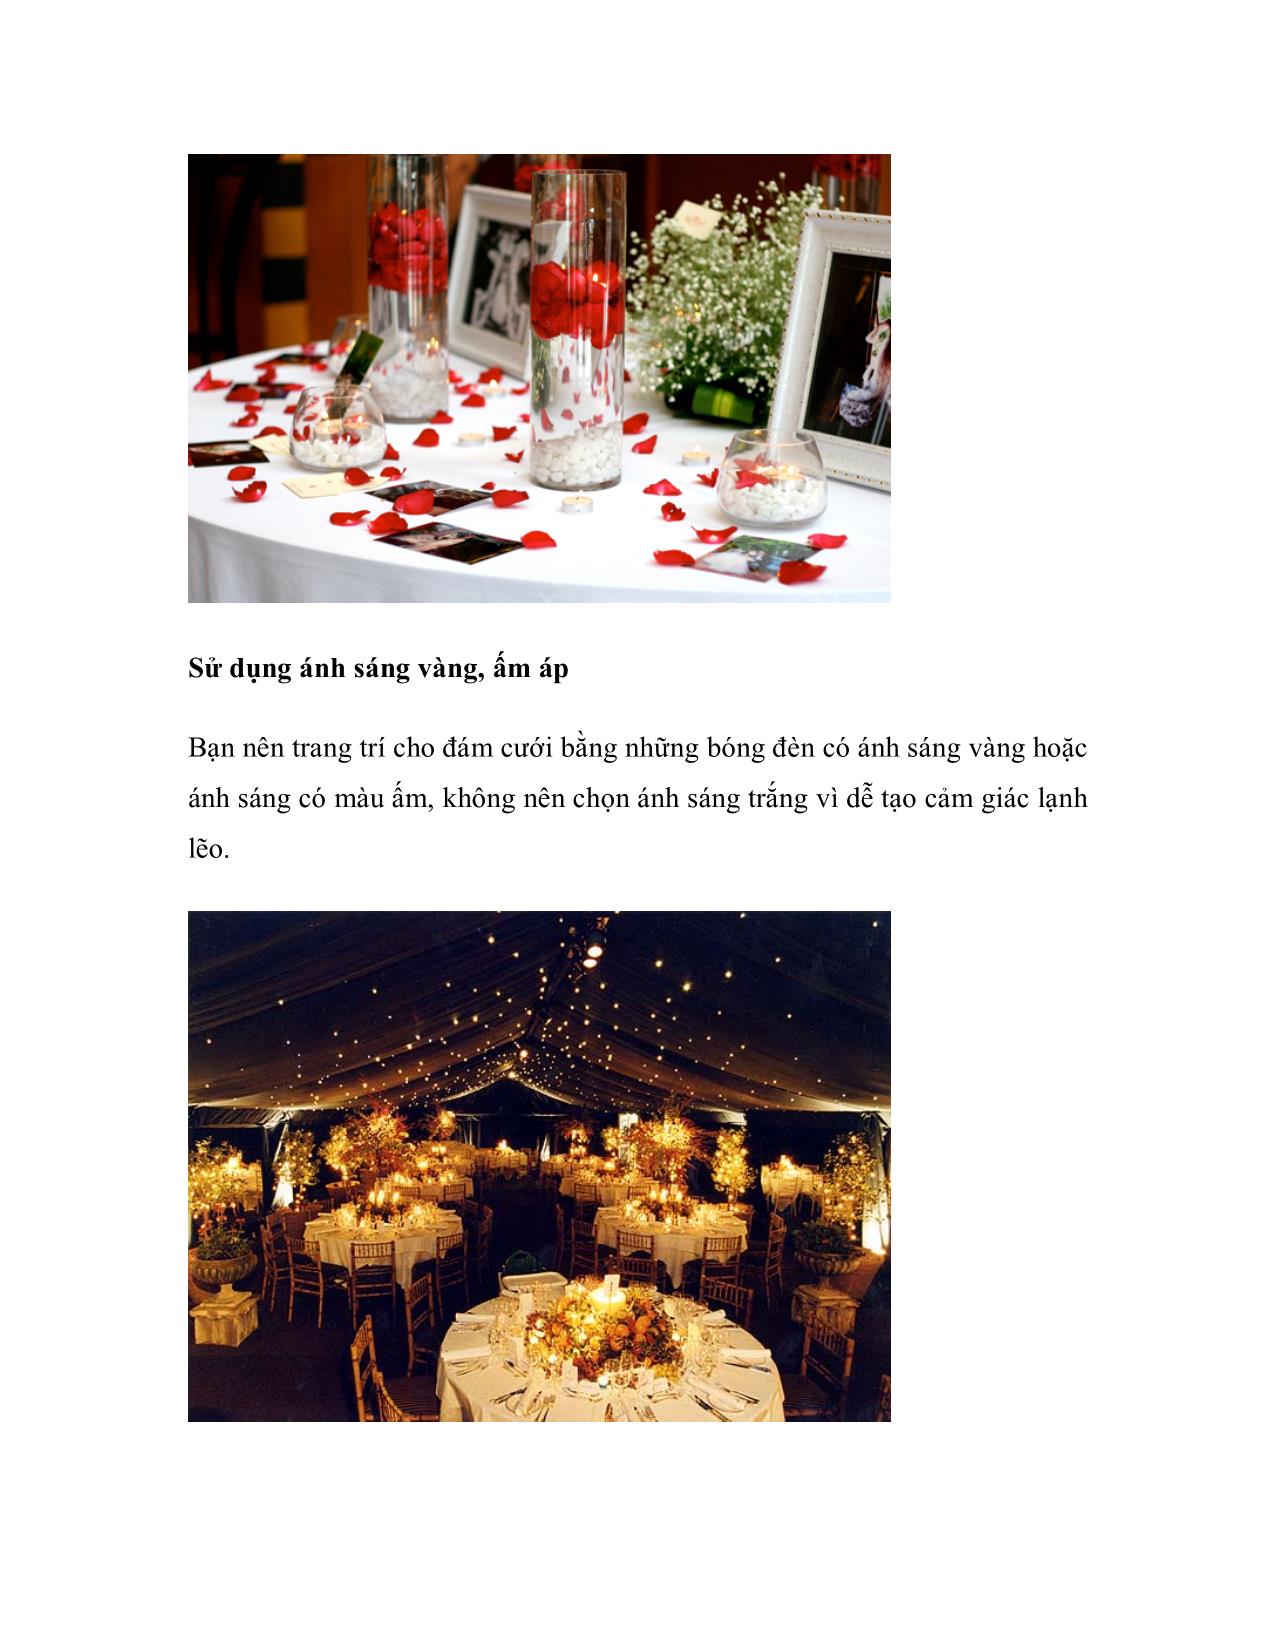 Event Channel - Bạn có thể làm không khí đám cưới của bạn trở nên ấm hơn với những màu rực rỡ, nến và hoa hồng đỏ trang 5